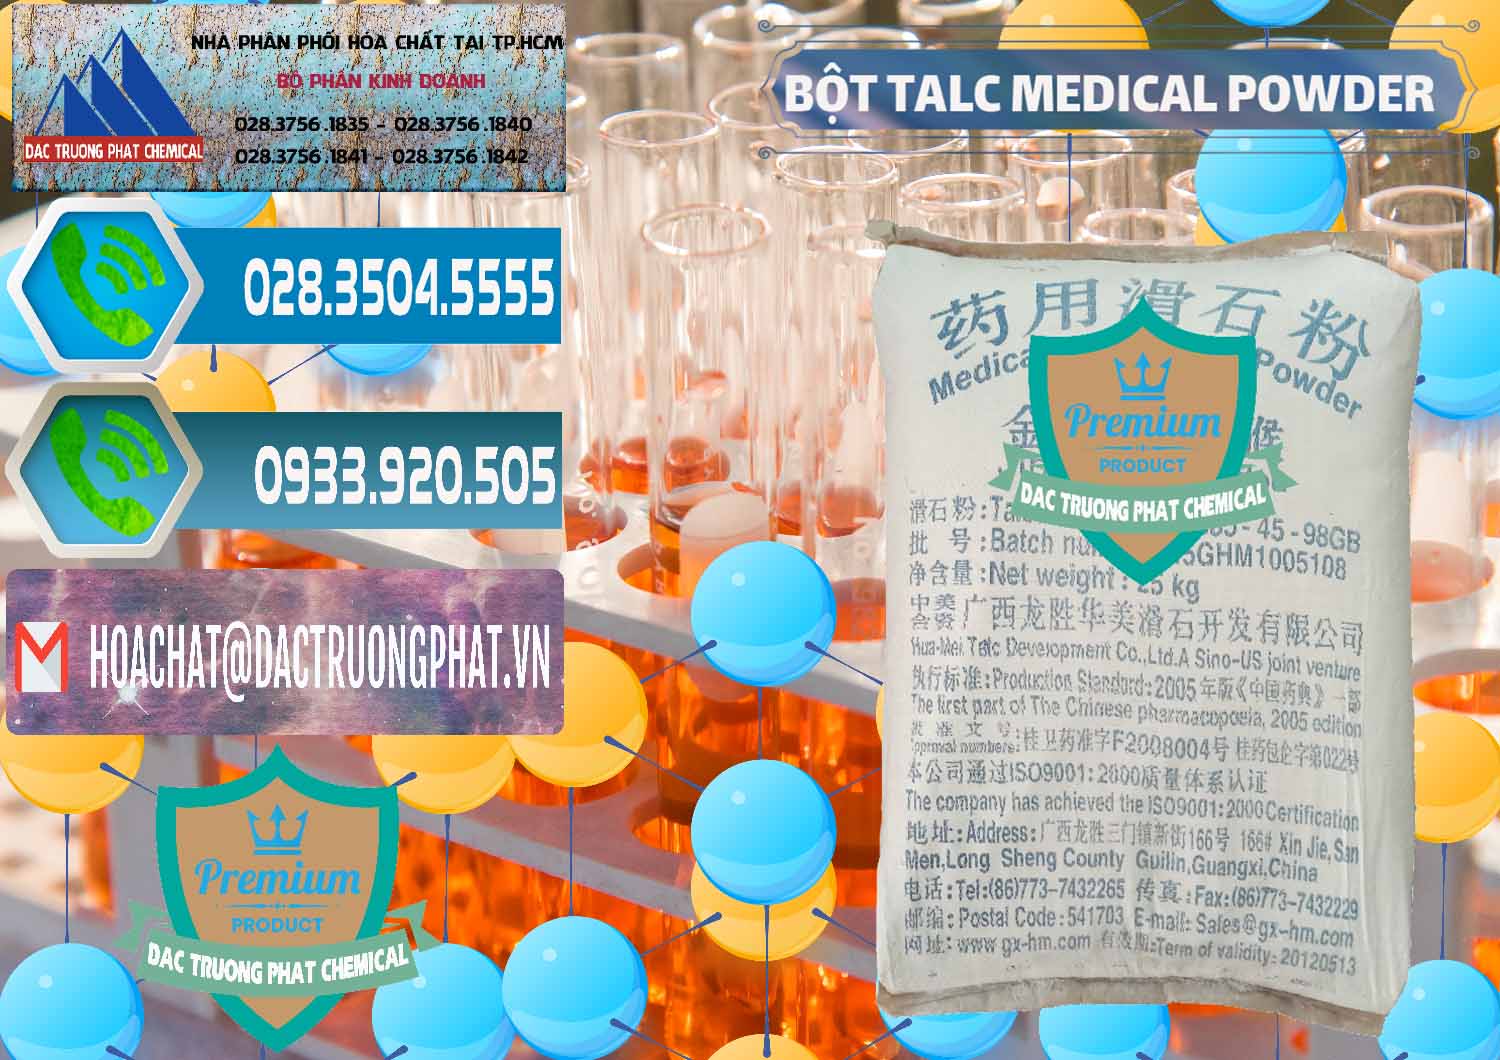 Đơn vị chuyên bán ( cung cấp ) Bột Talc Medical Powder Trung Quốc China - 0036 - Cty chuyên bán và cung cấp hóa chất tại TP.HCM - congtyhoachat.net